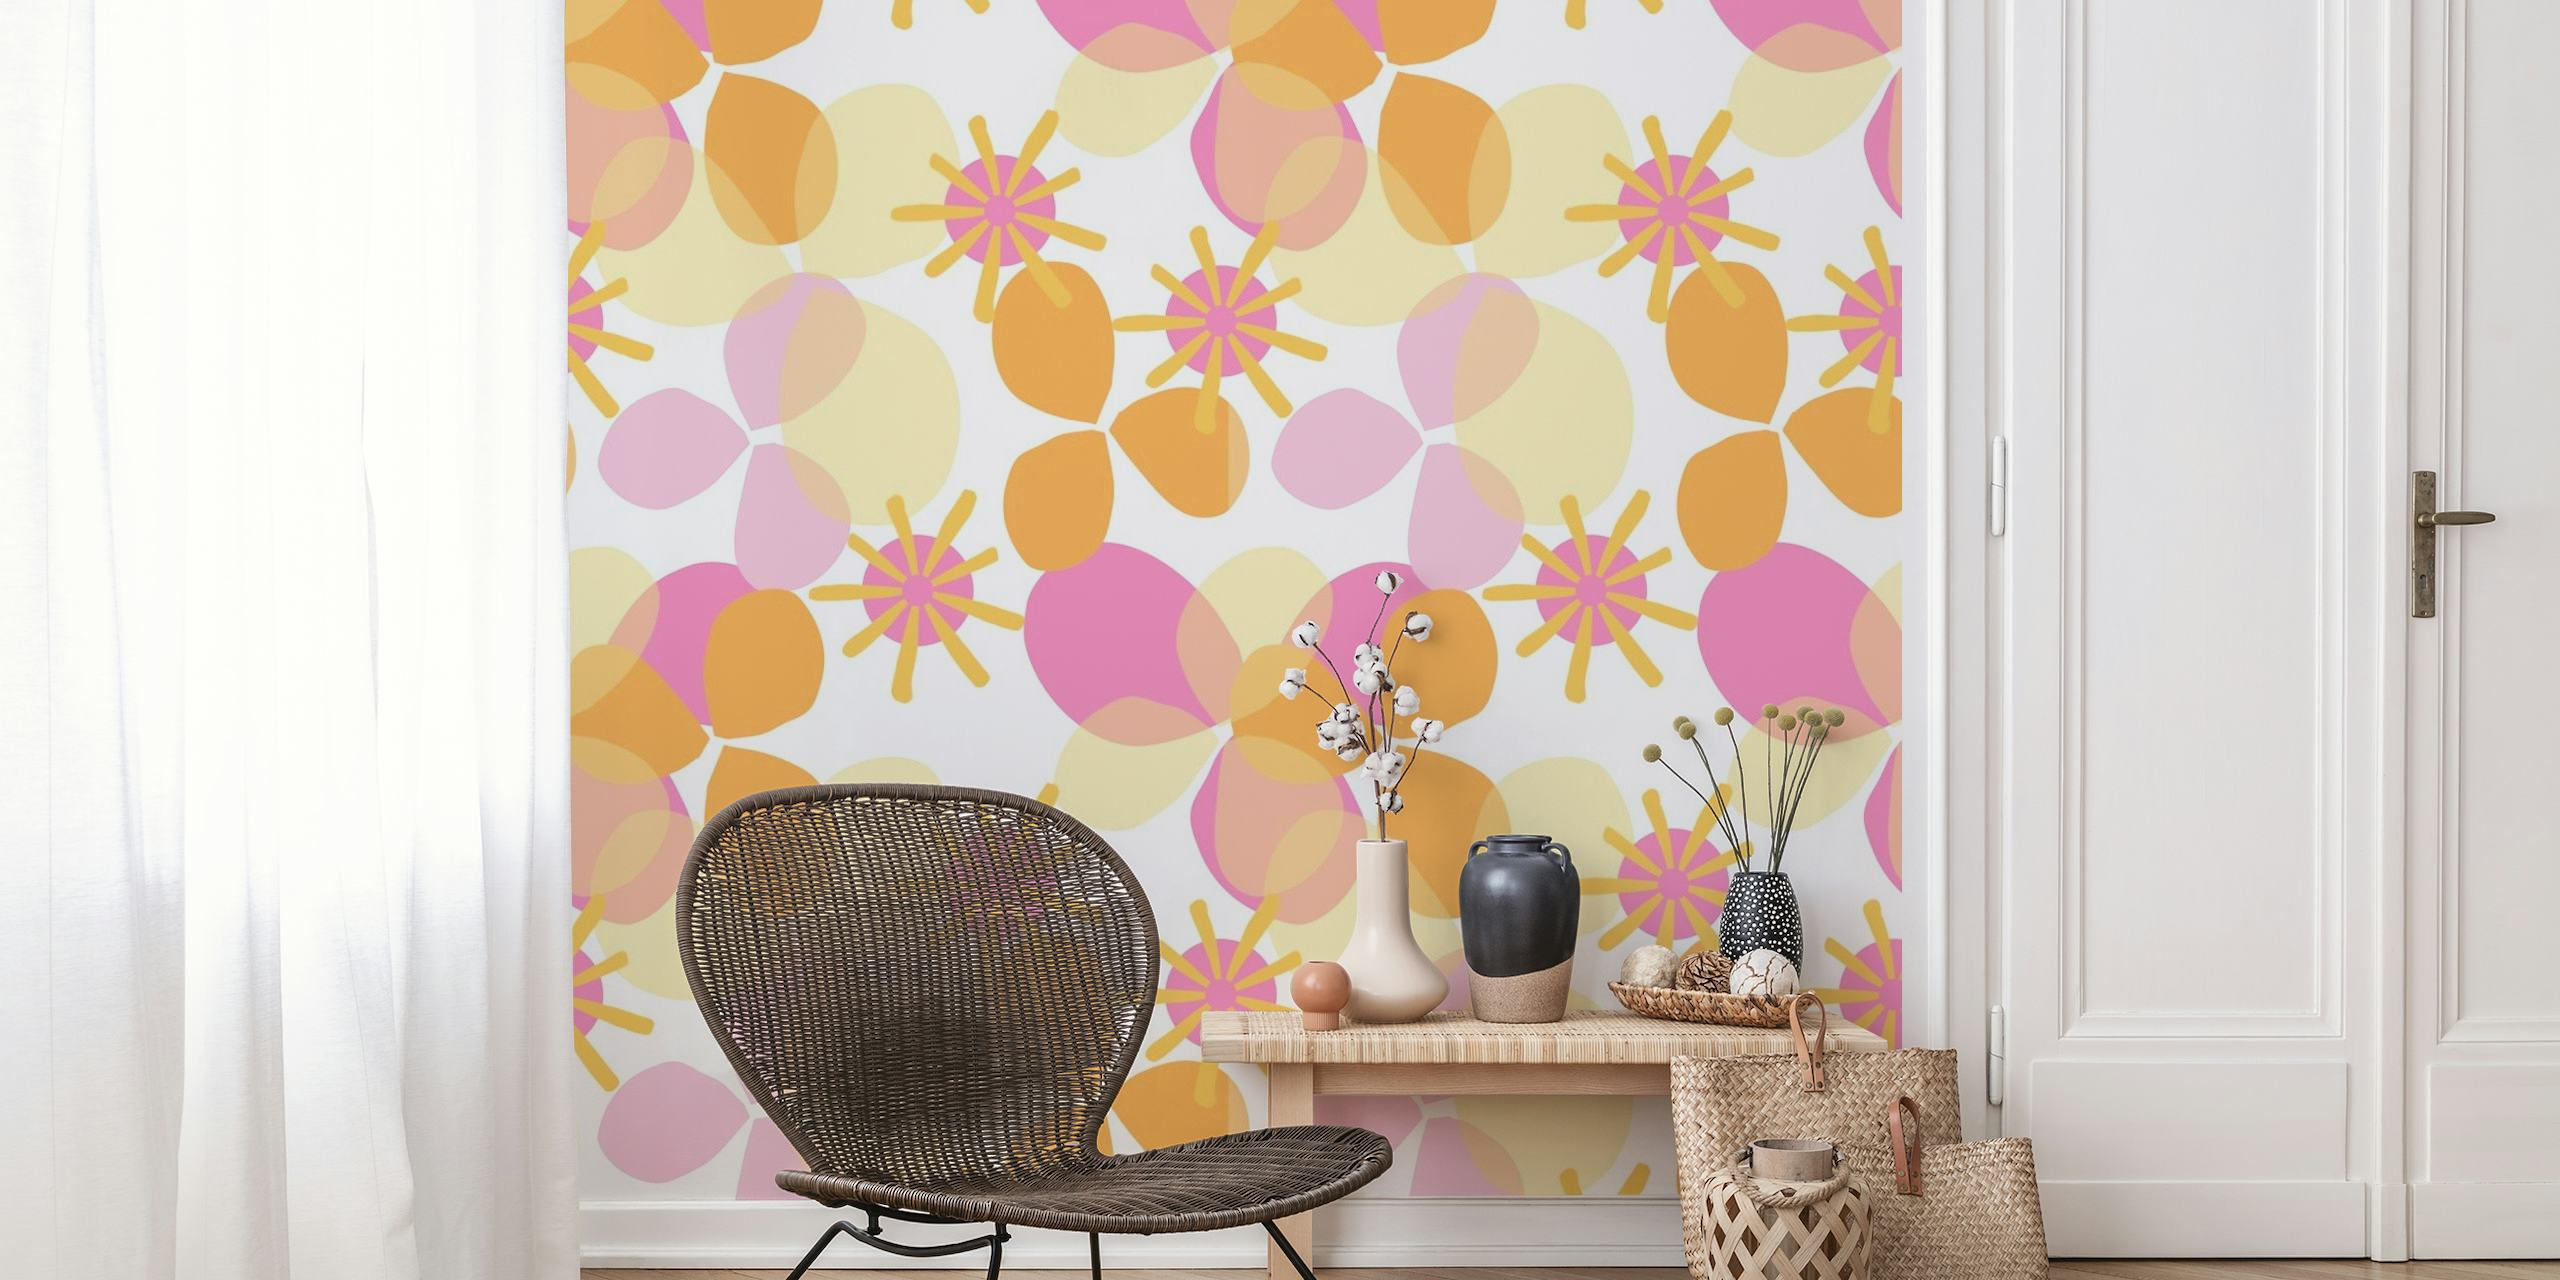 Mural de pared colorido con motivos geométricos y florales llamado Party Play